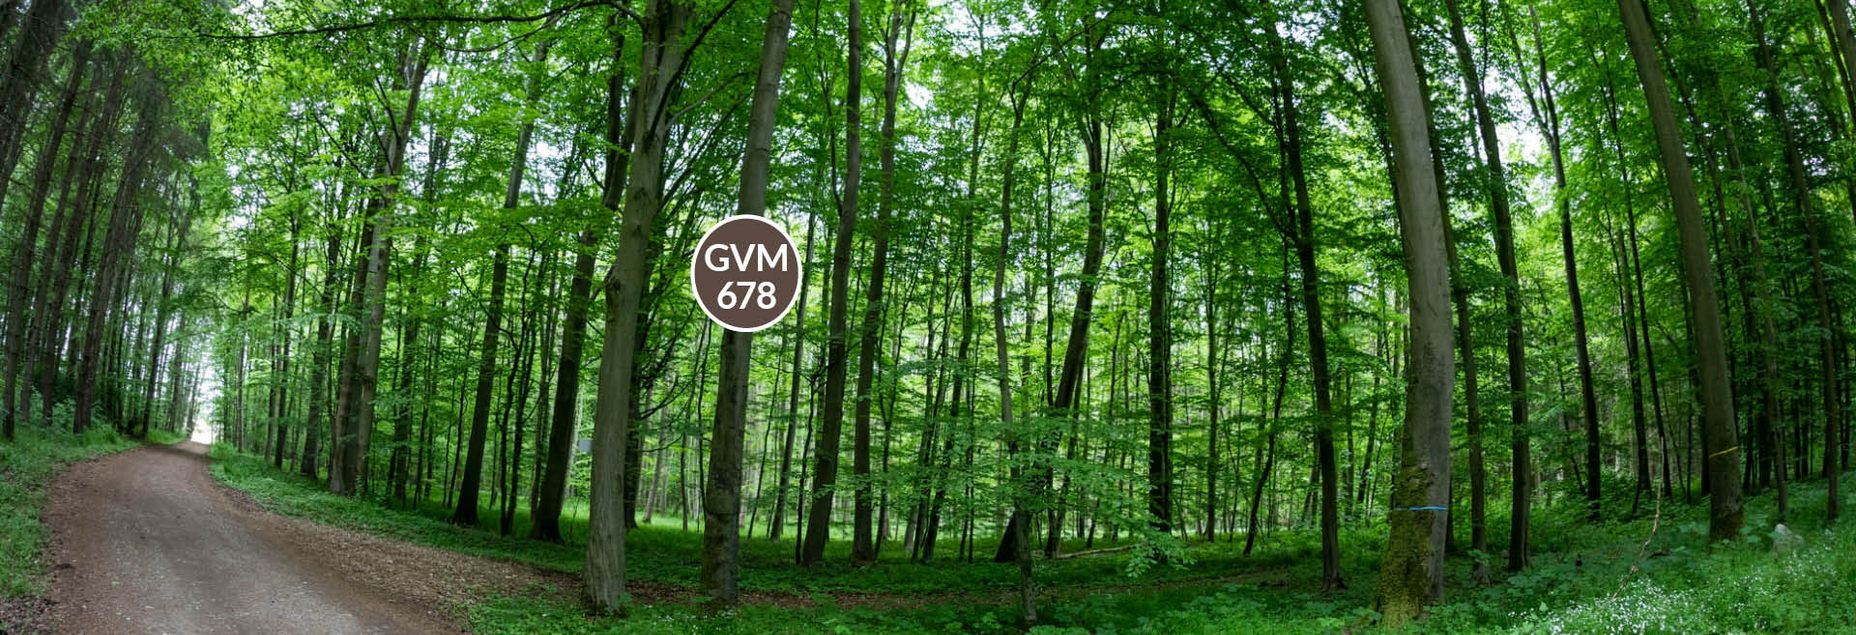 Baum GVM 678 - Fisheyeperspektive